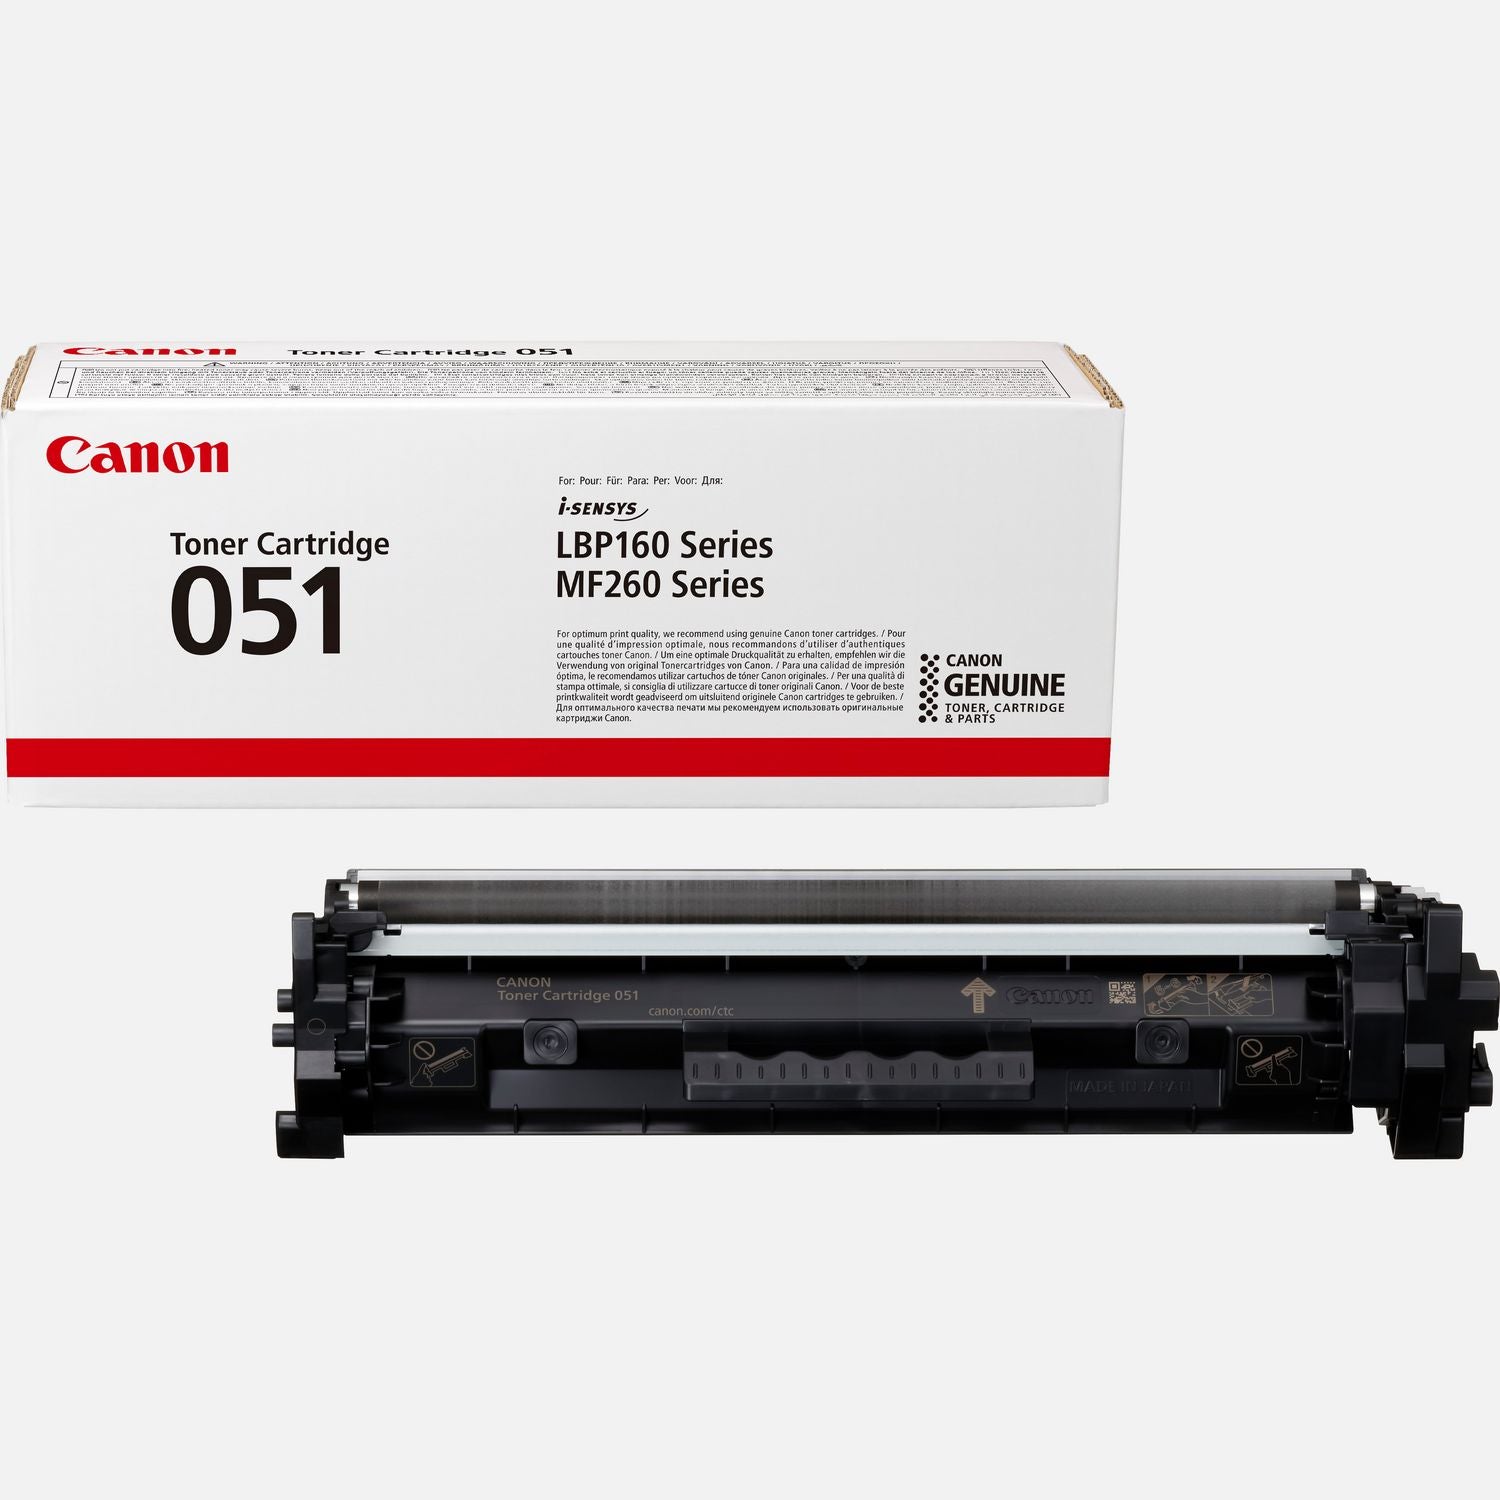 Absolute Toner Canon 051 (2170C001) Black Original Genuine OEM Drum Unit Original Canon Cartridges